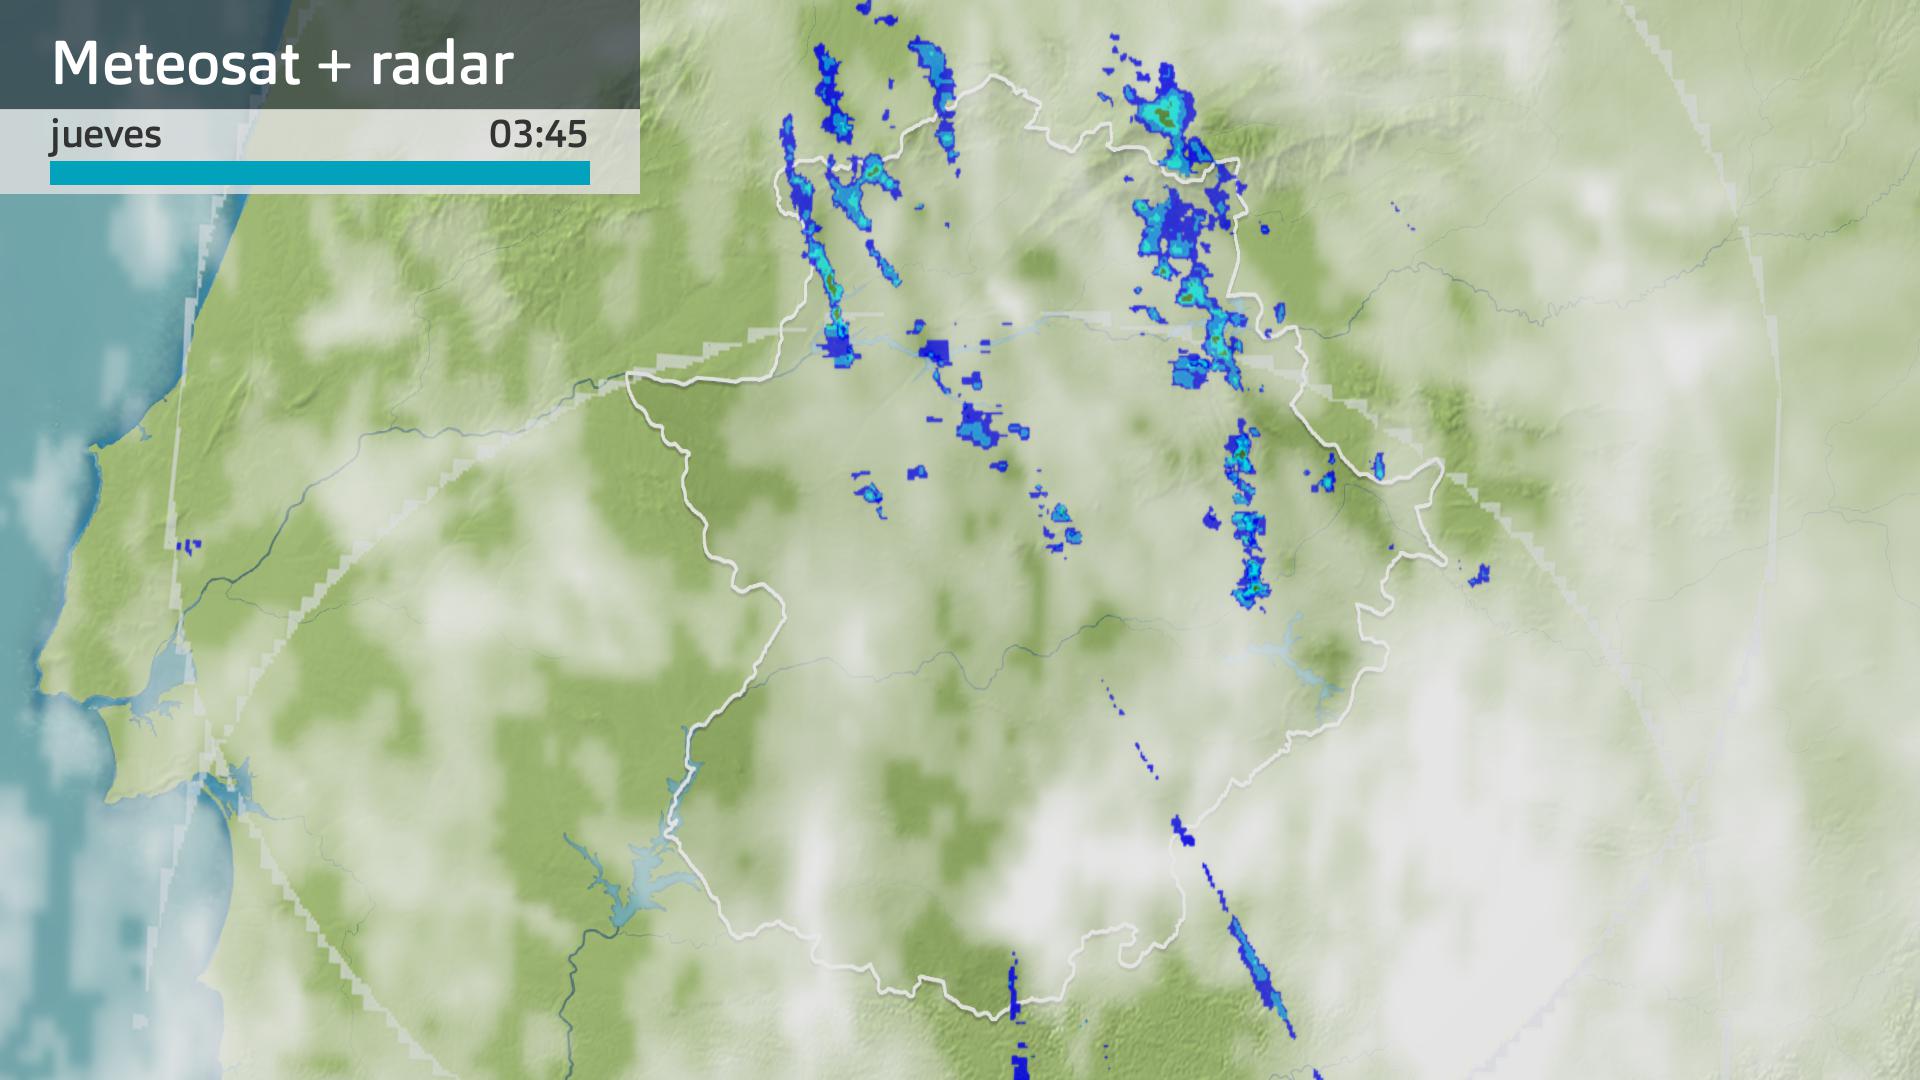 Imagen del Meteosat + radar meteorológico jueves 15 de febrero 3:45 h.